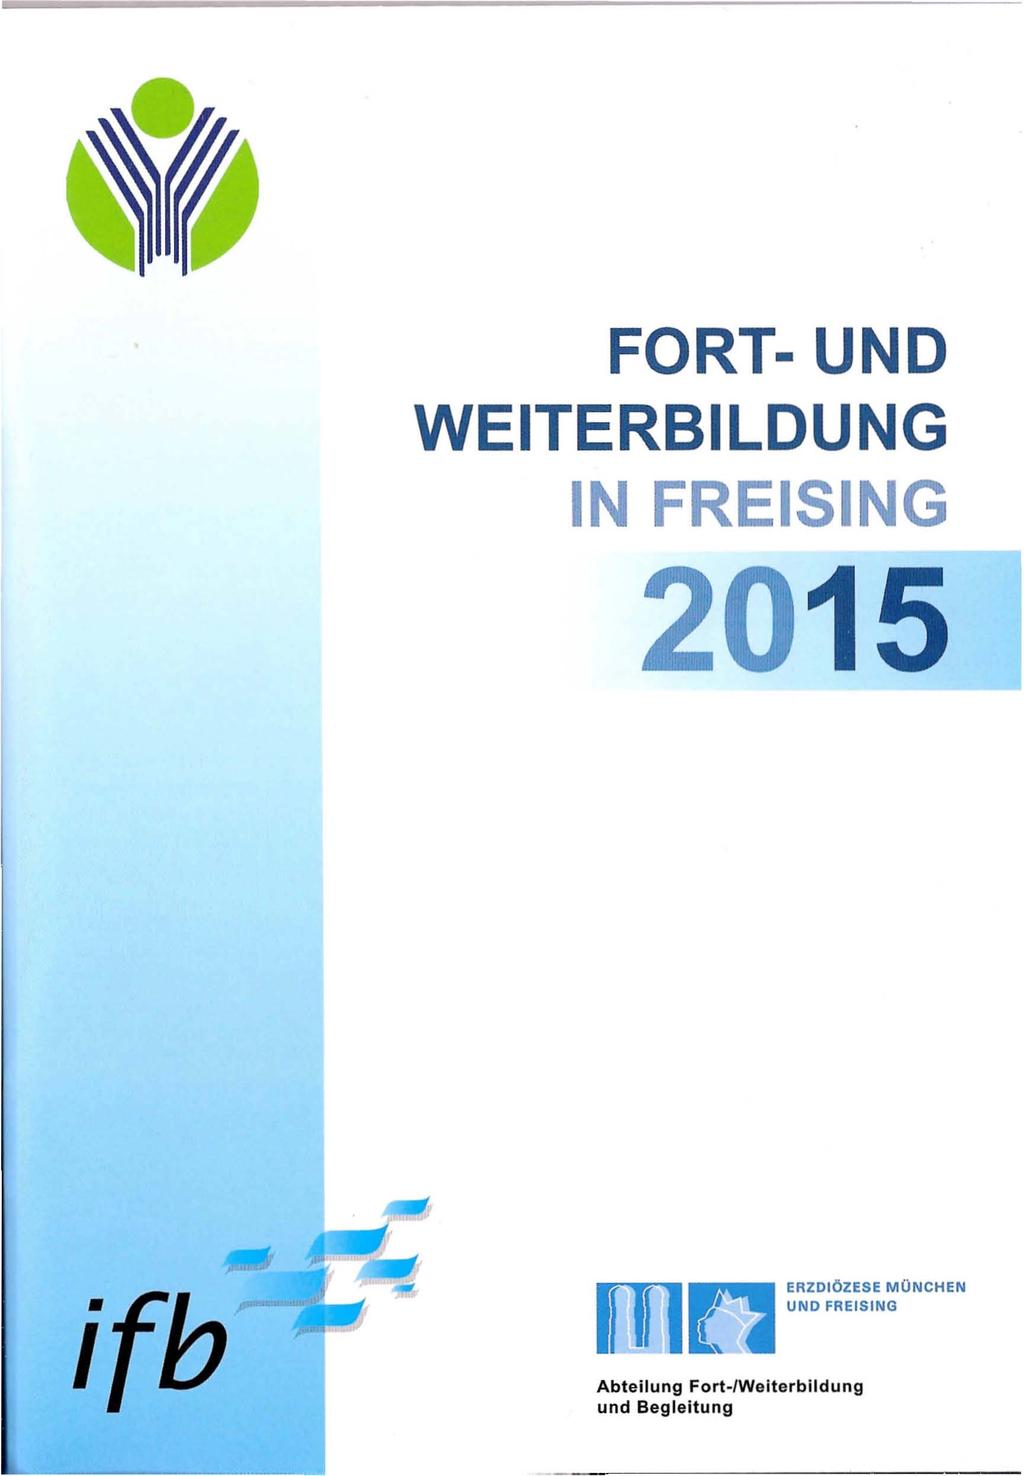 FORT- UND WEITERBILDUNG IN FREISING 2015 ifb